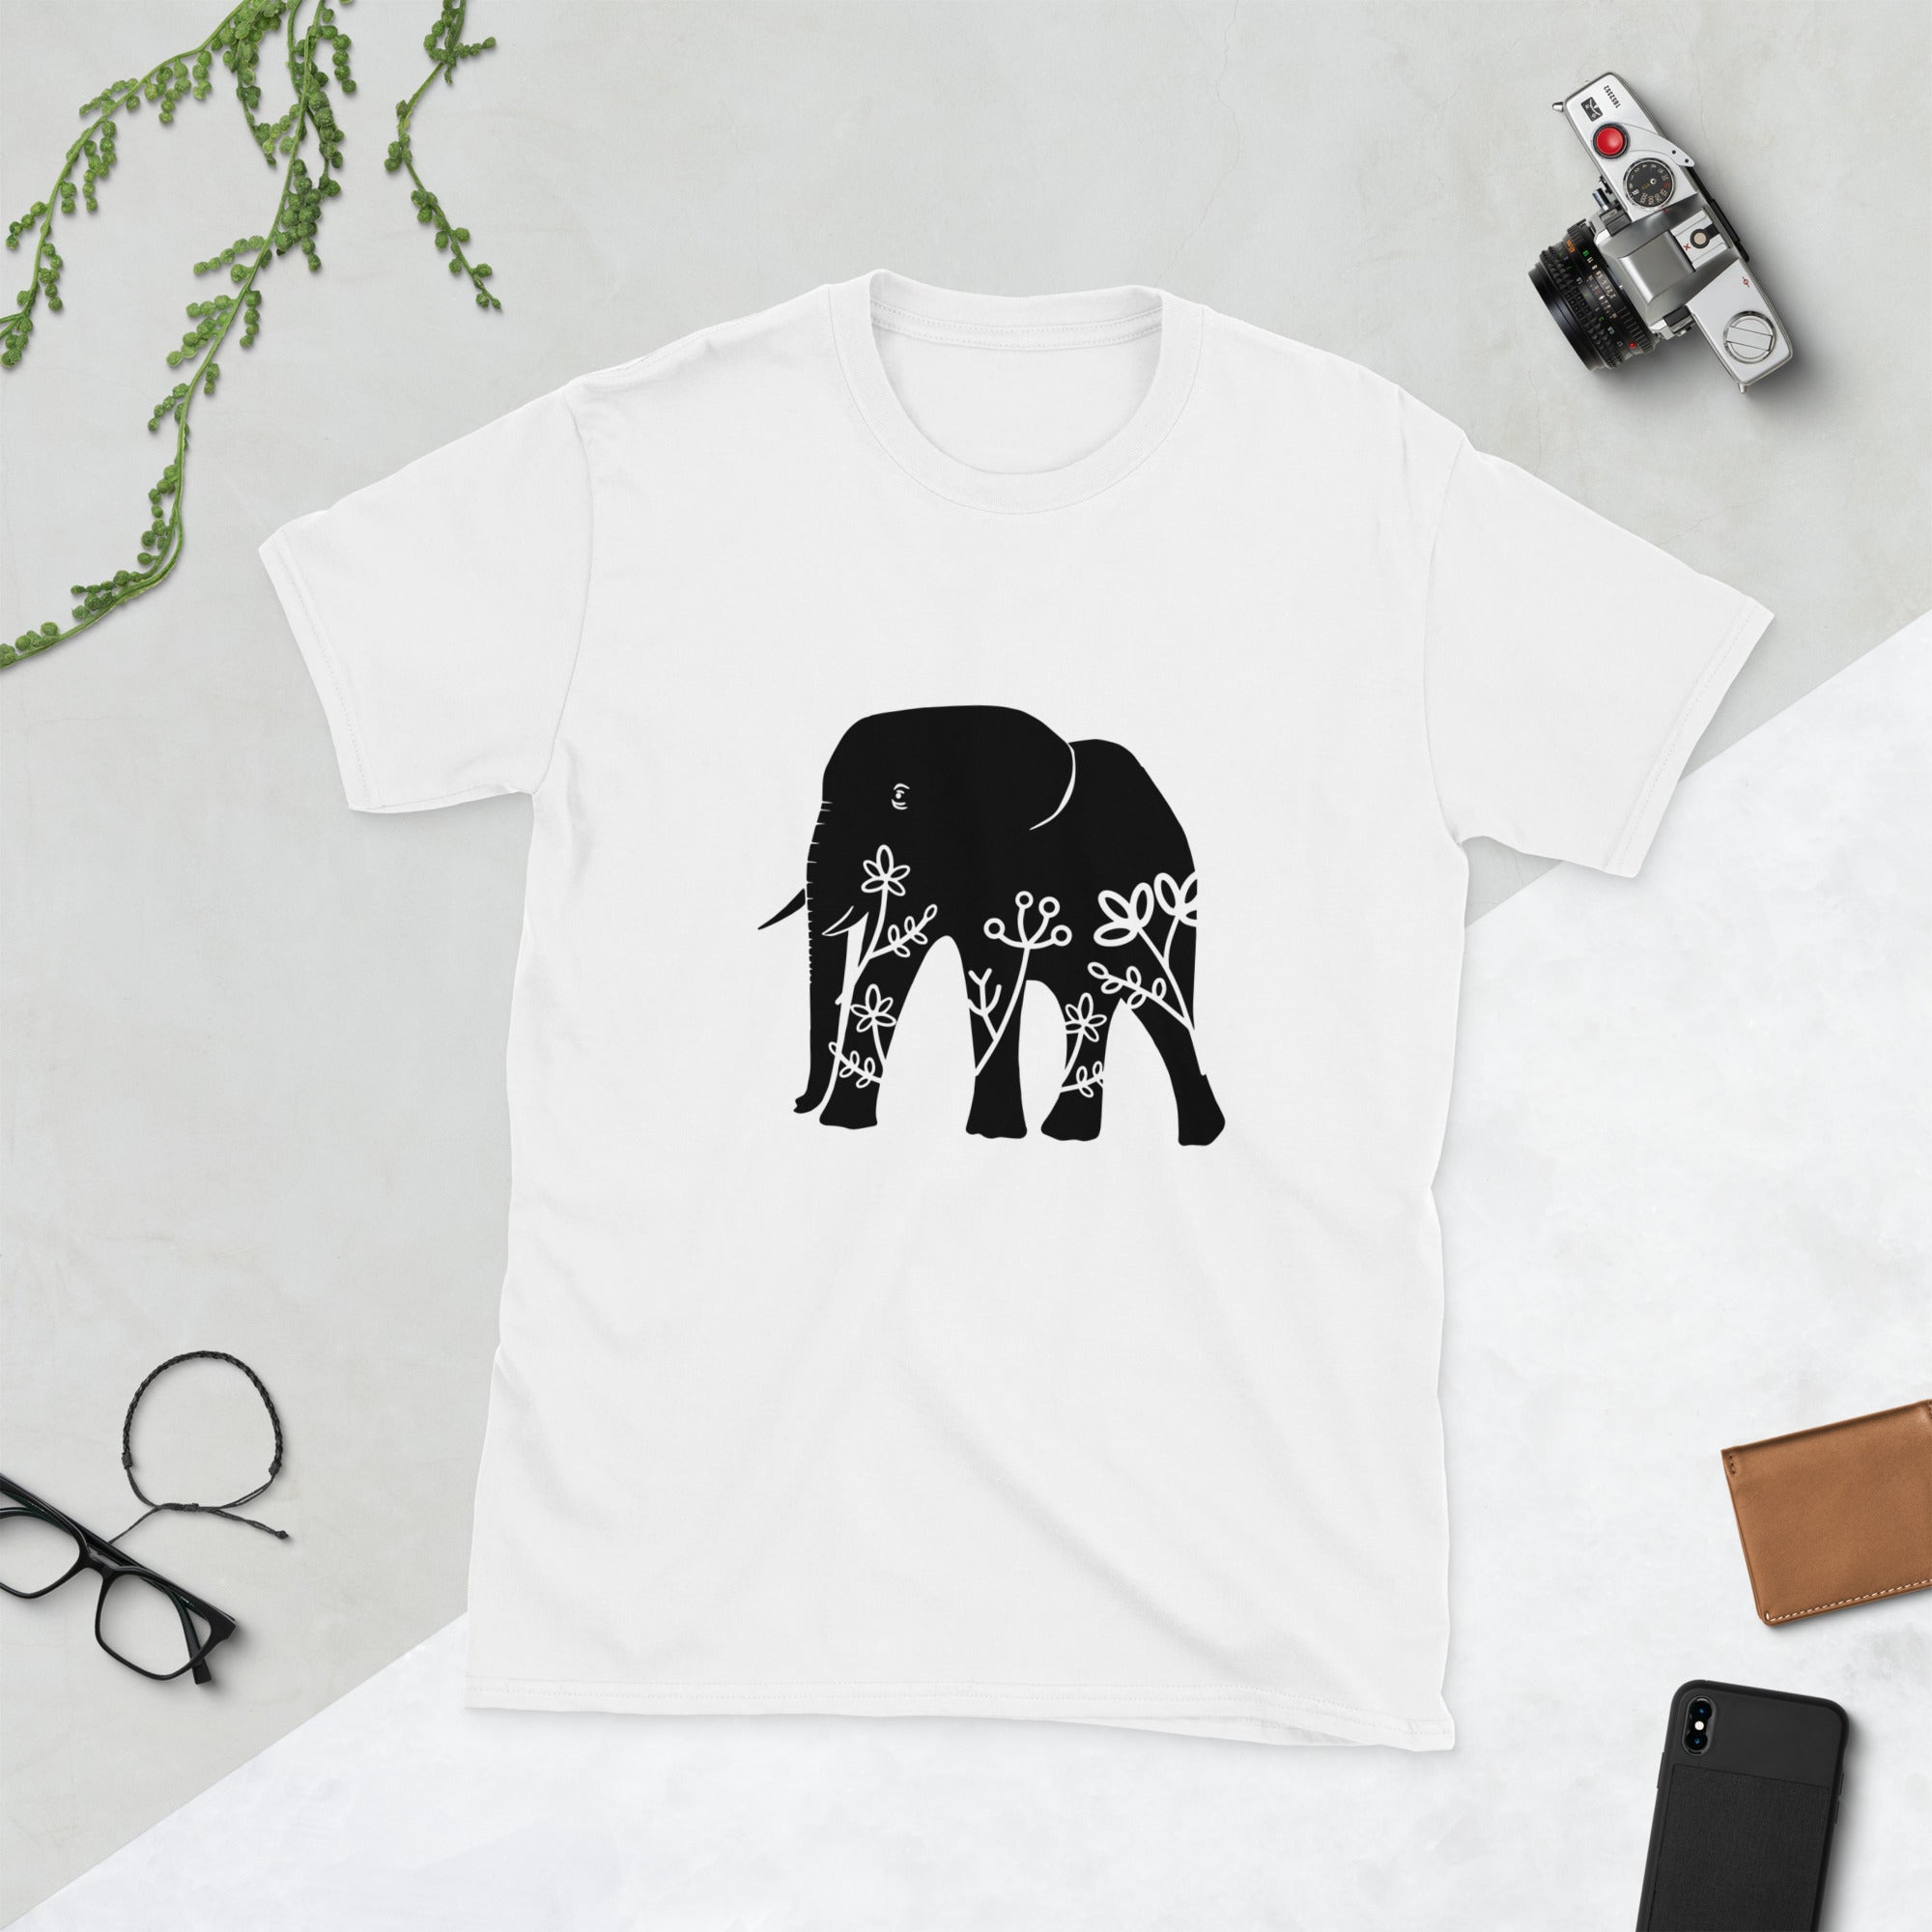 Short-Sleeve Unisex T-Shirt- Elephant